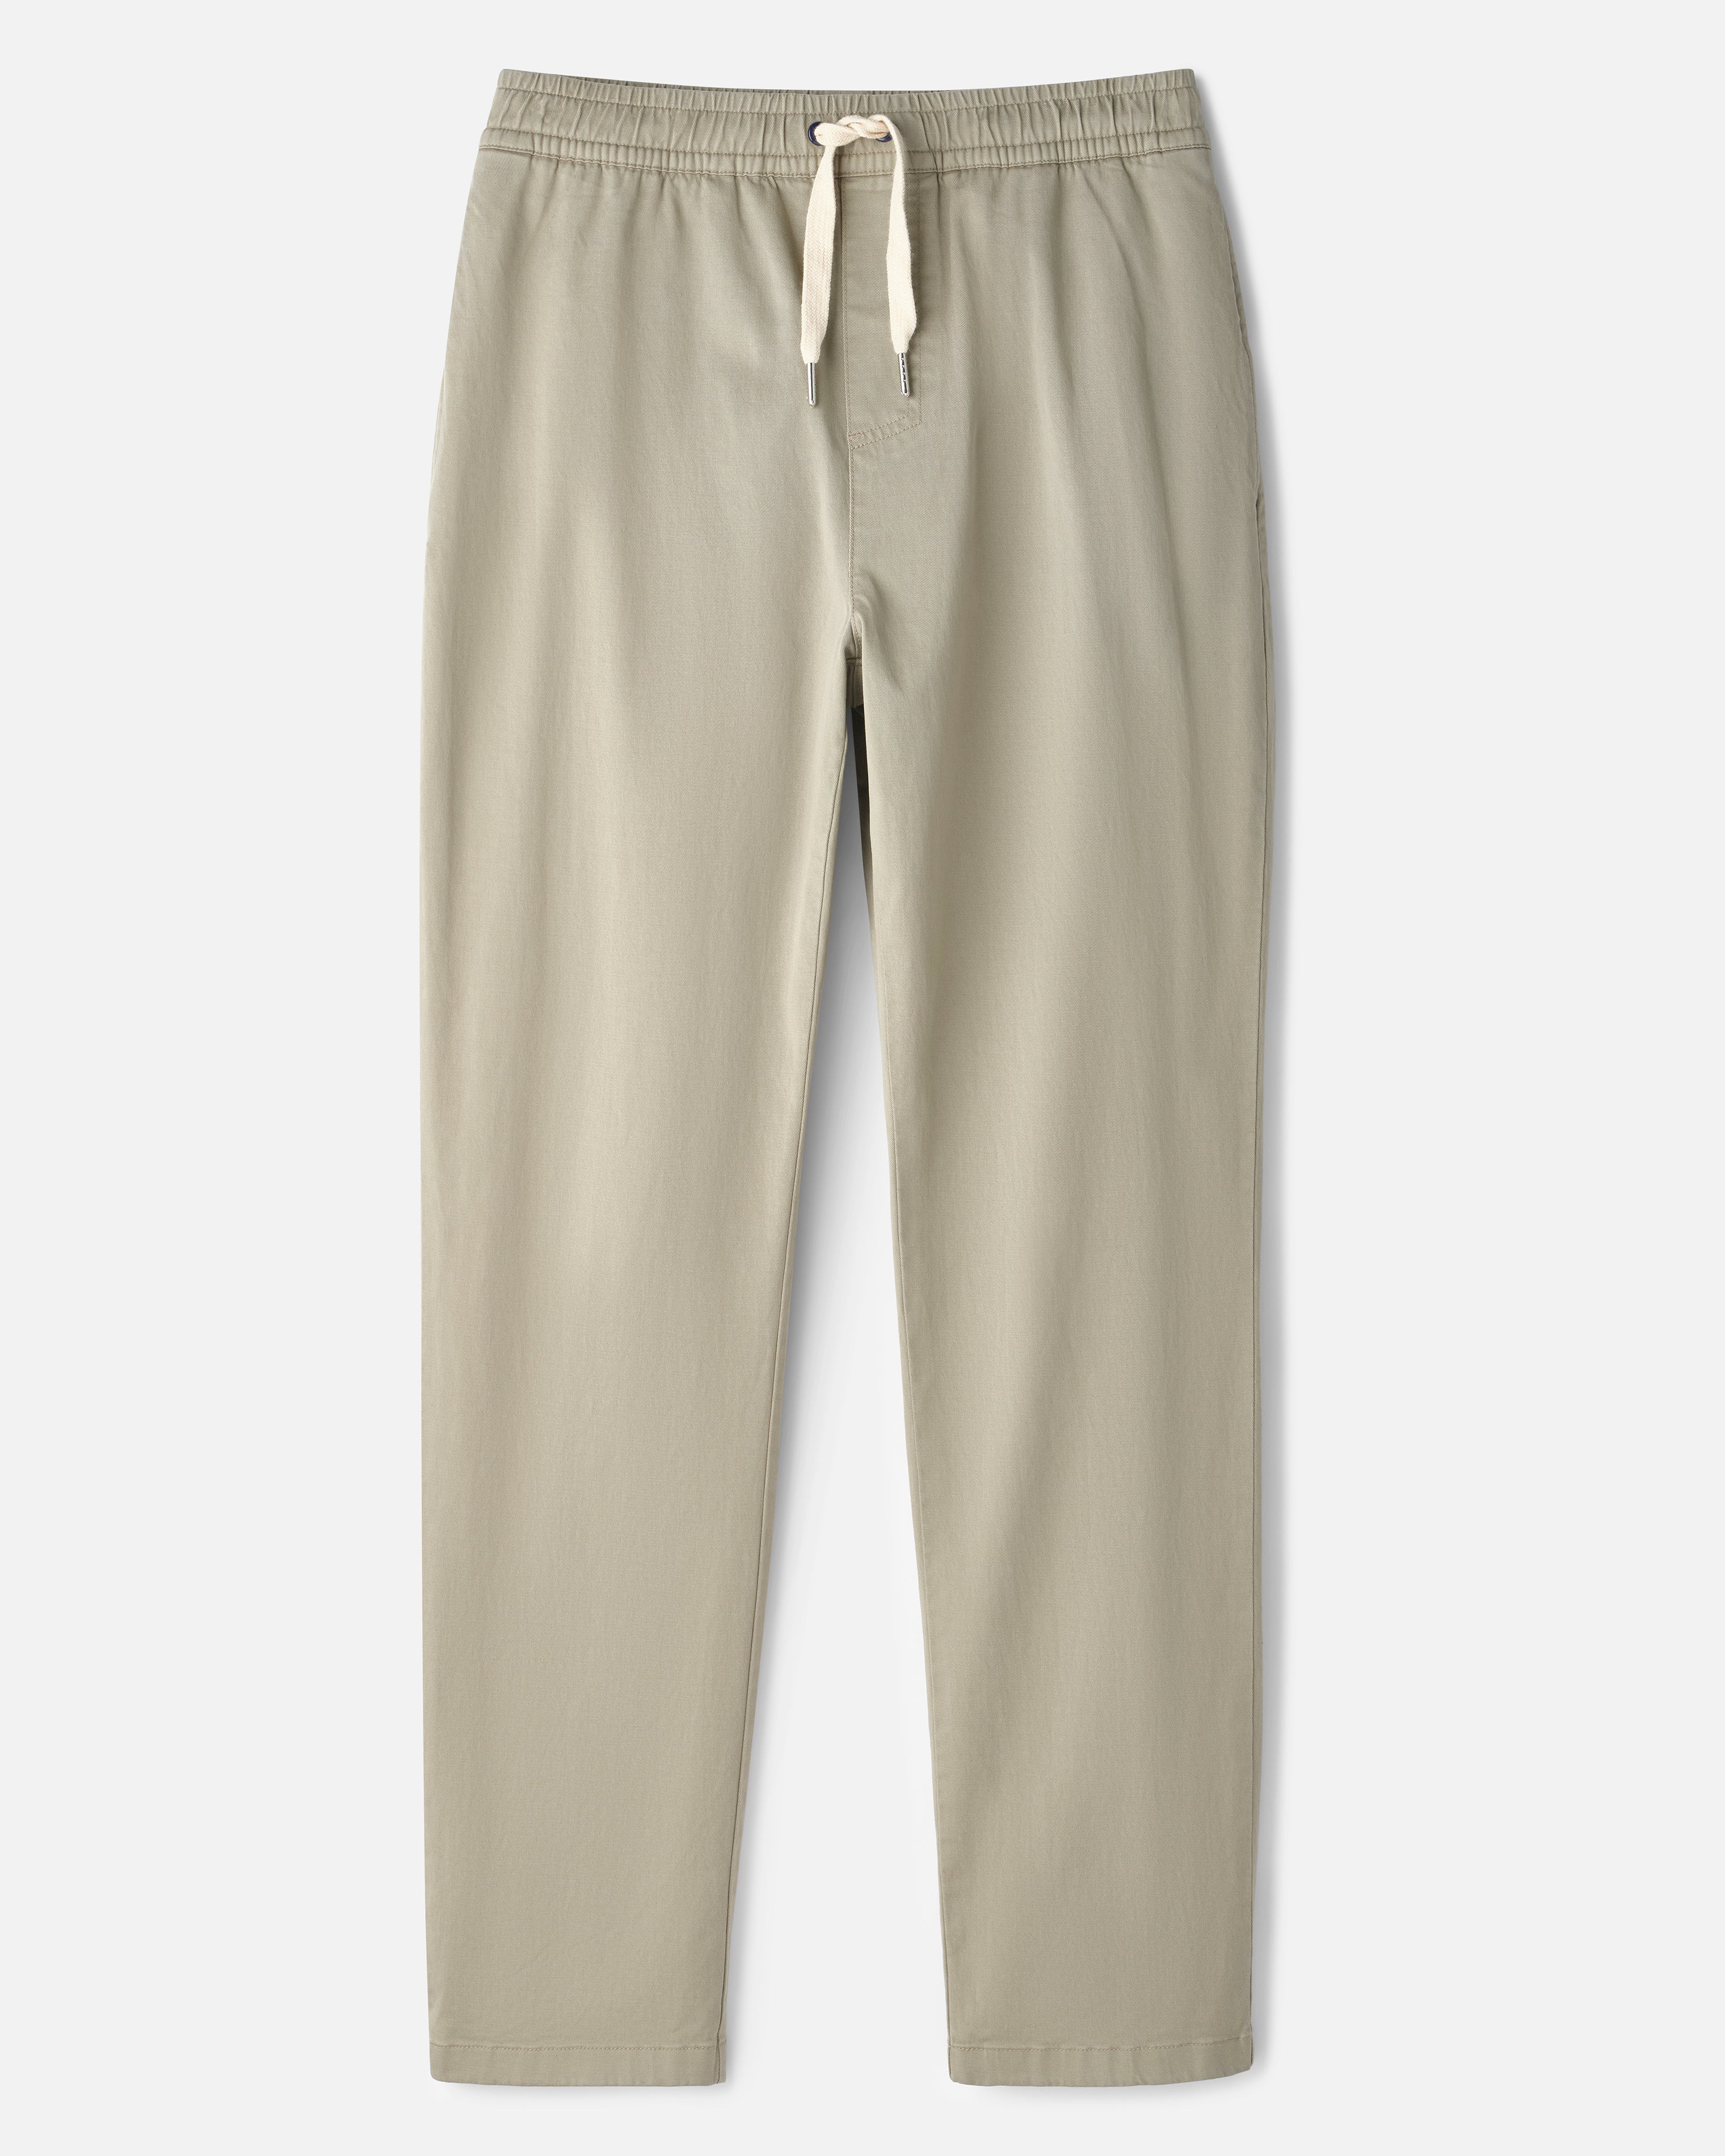 UNIQLO COTTON SPANDEX ANKLE PANT, Men's Fashion, Bottoms, Trousers